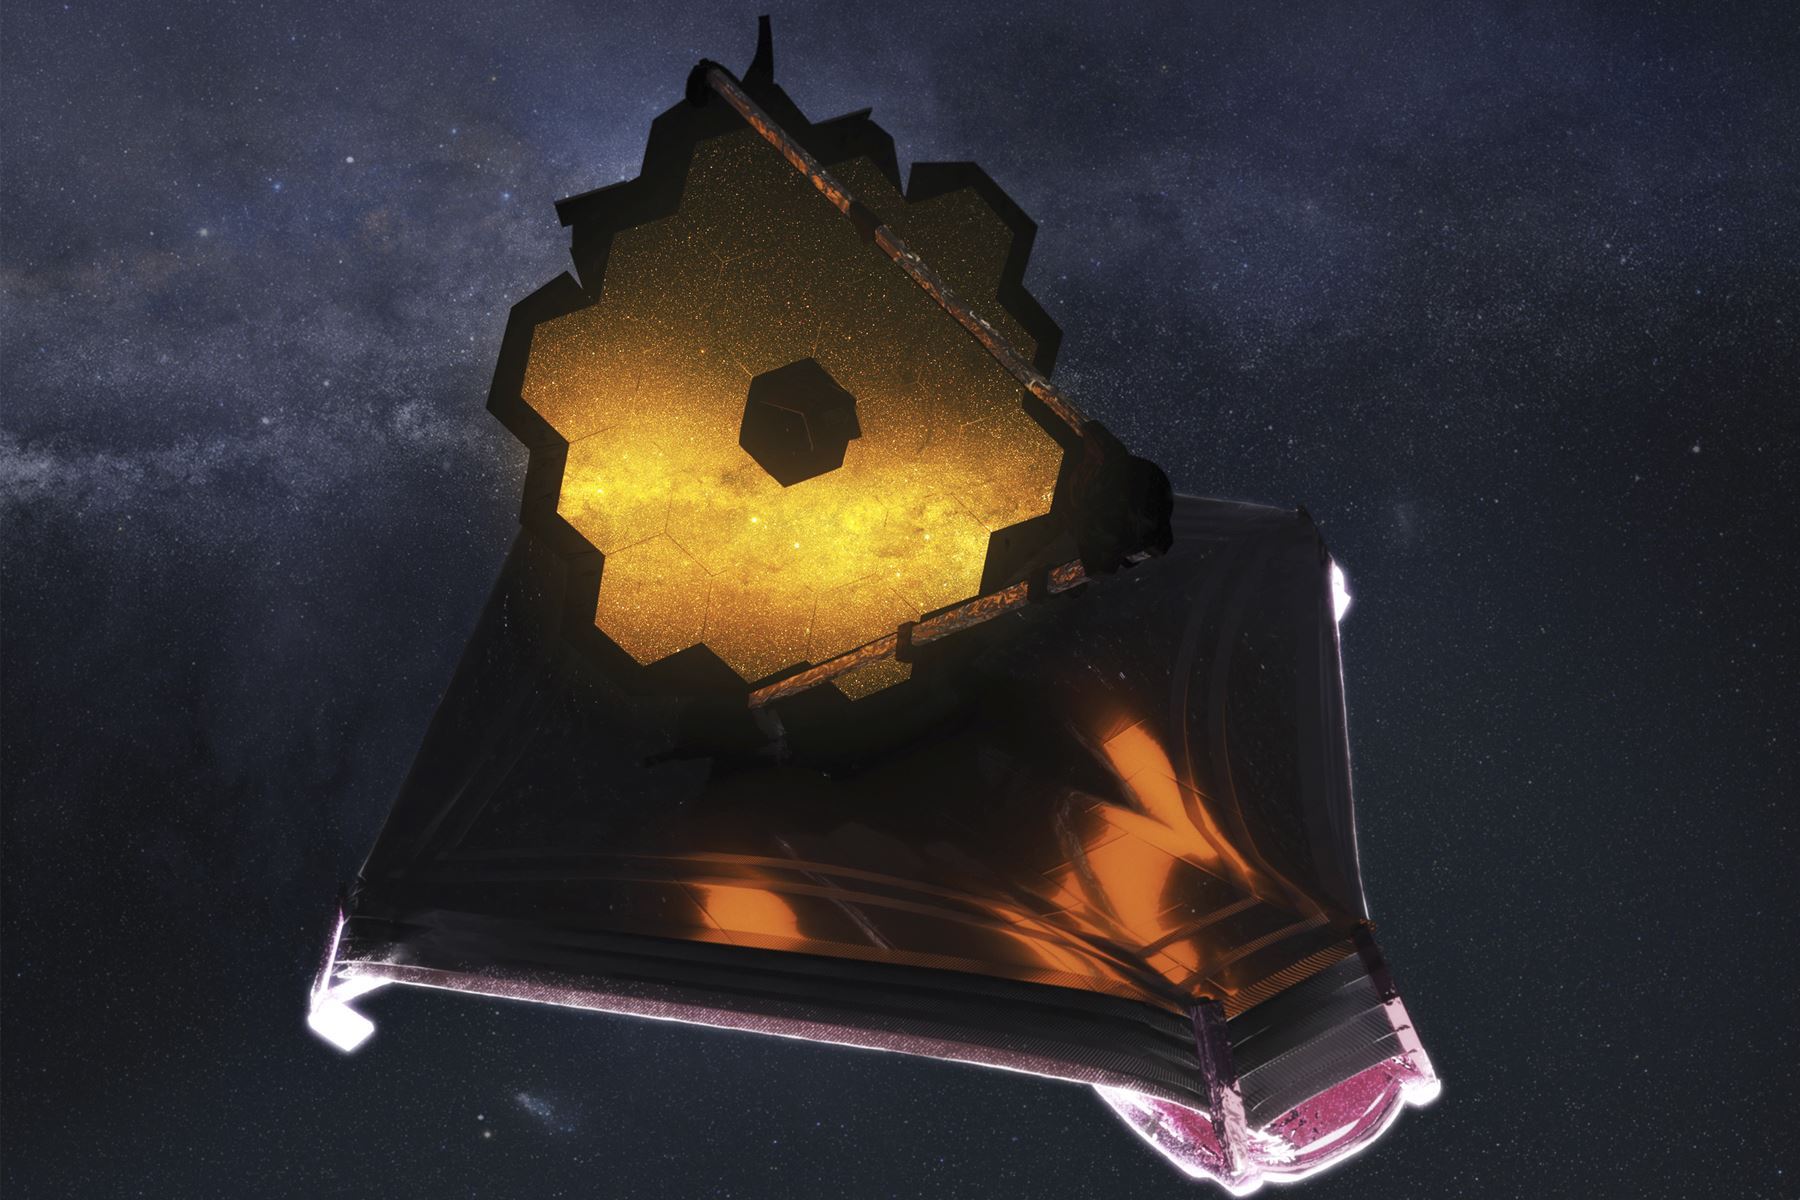 El telescopio espacial James Webb, lanzado en diciembre de 2021 al espacio, ha pasado por un período de preparación de seis meses antes de poder comenzar su trabajo científico, calibrando sus instrumentos a su entorno espacial y alineando sus espejos.
Foto: NASA